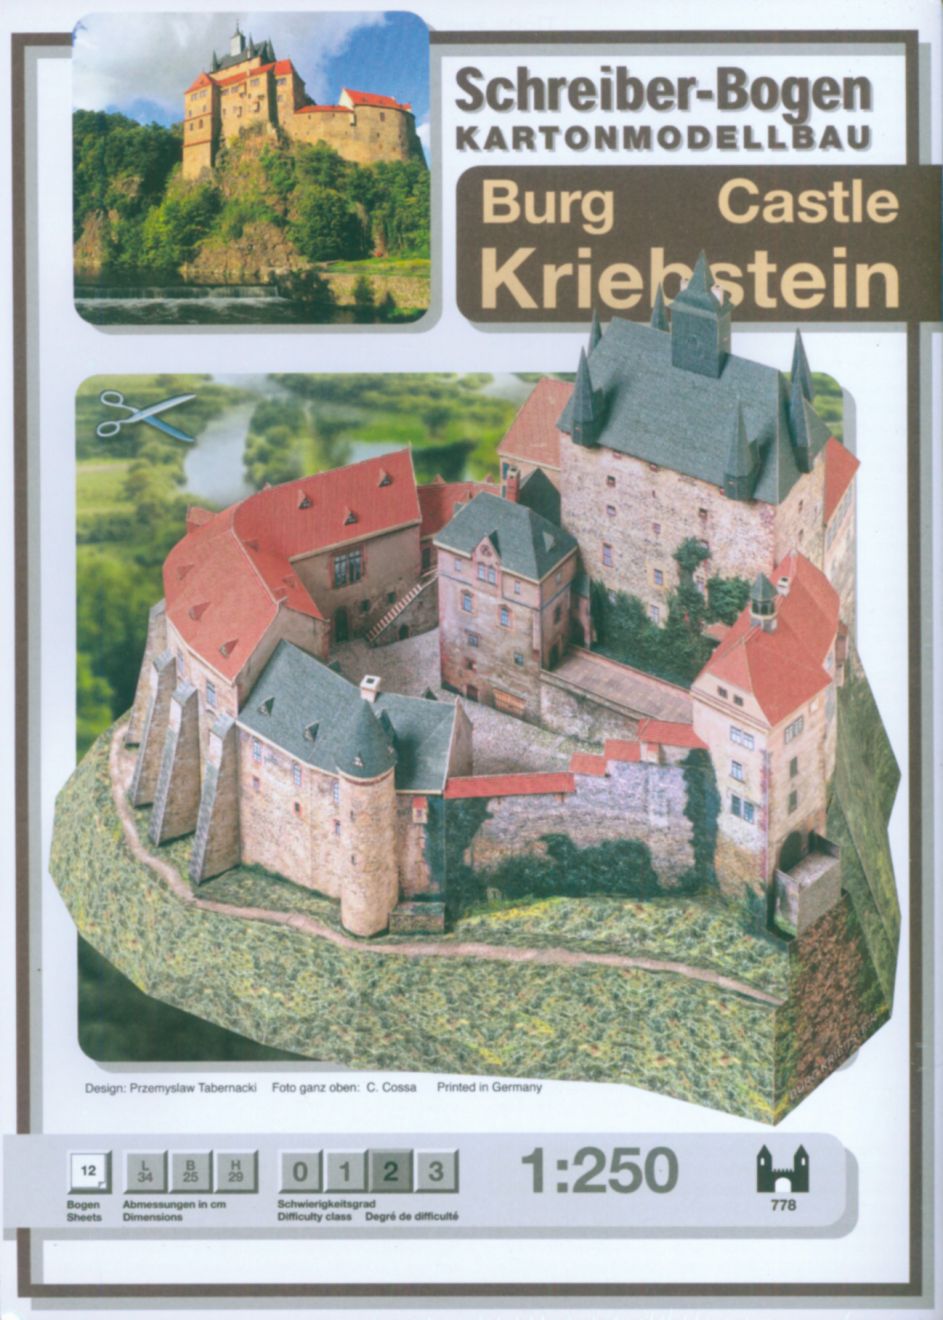 Schreiber-Bogen Card Model making Castle Kriebstein 